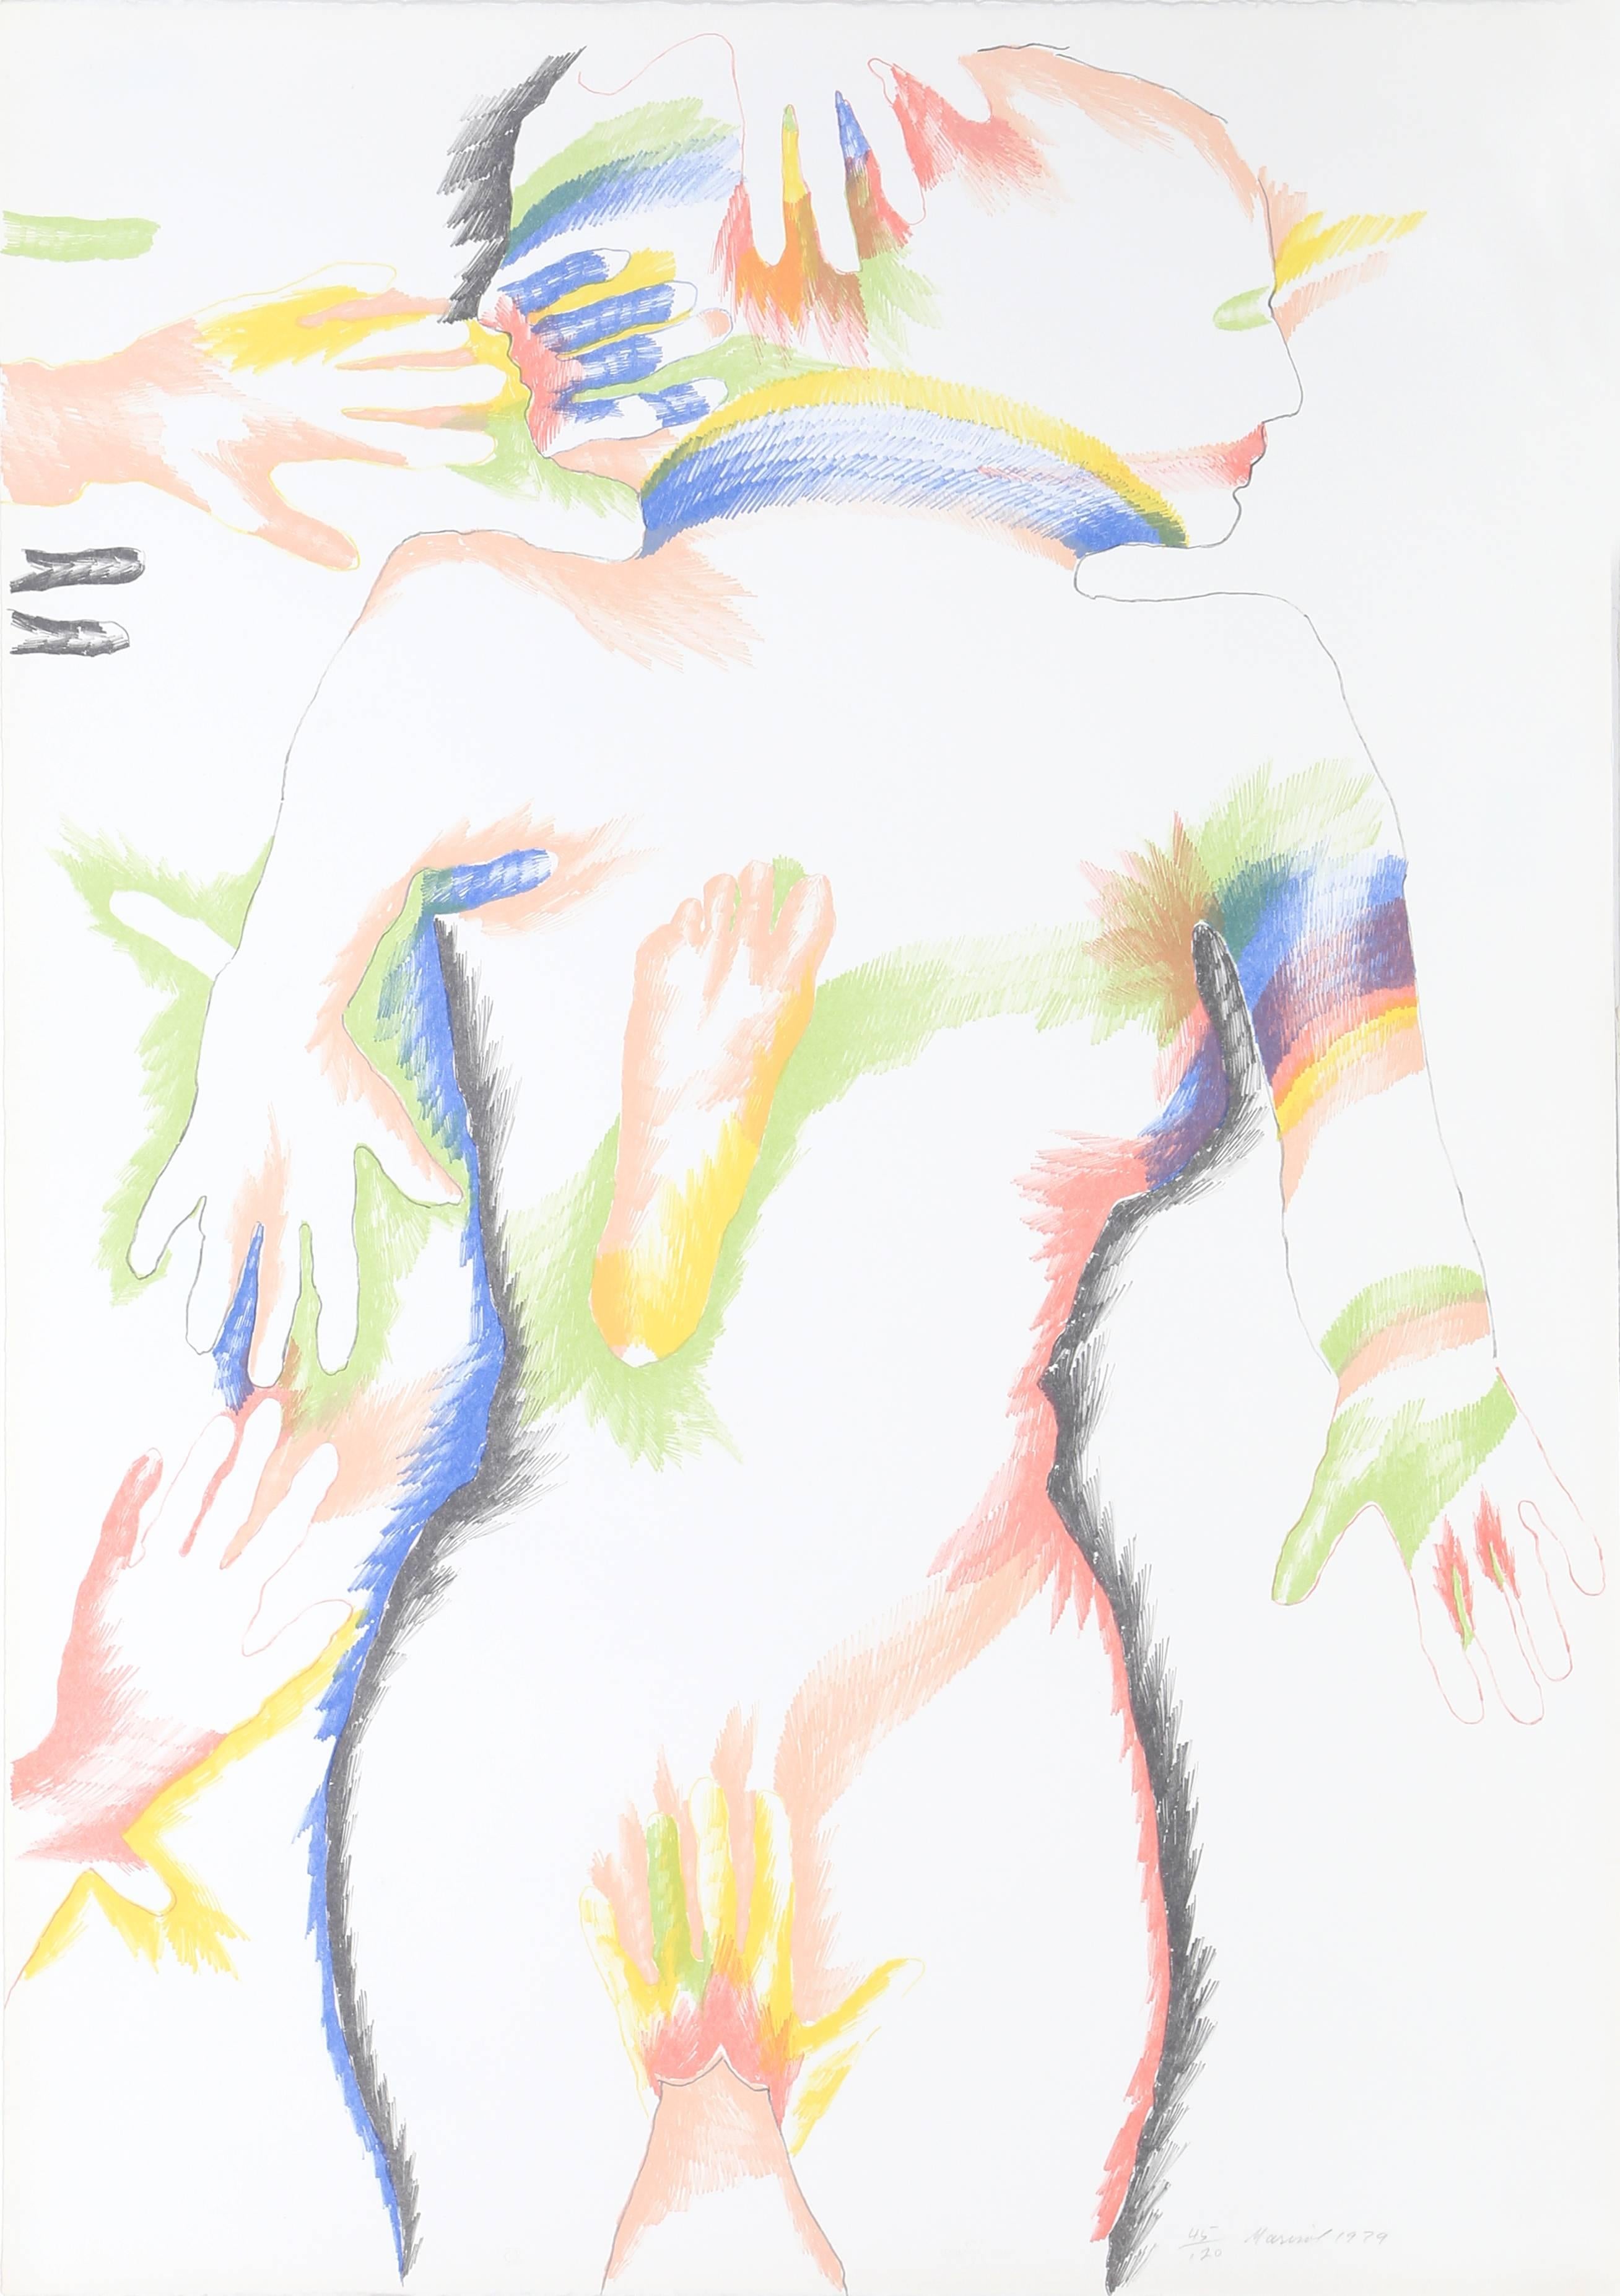 Artistics : Marisol Escobar, française/vénézuélienne (1930 - 2016)
Titre : Le peuple arc-en-ciel
Année : 1979
Médium : Lithographie, signée et numérotée au crayon
Édition : 120
Taille : 42 x 29.5 in. (106.68 x 74.93 cm)